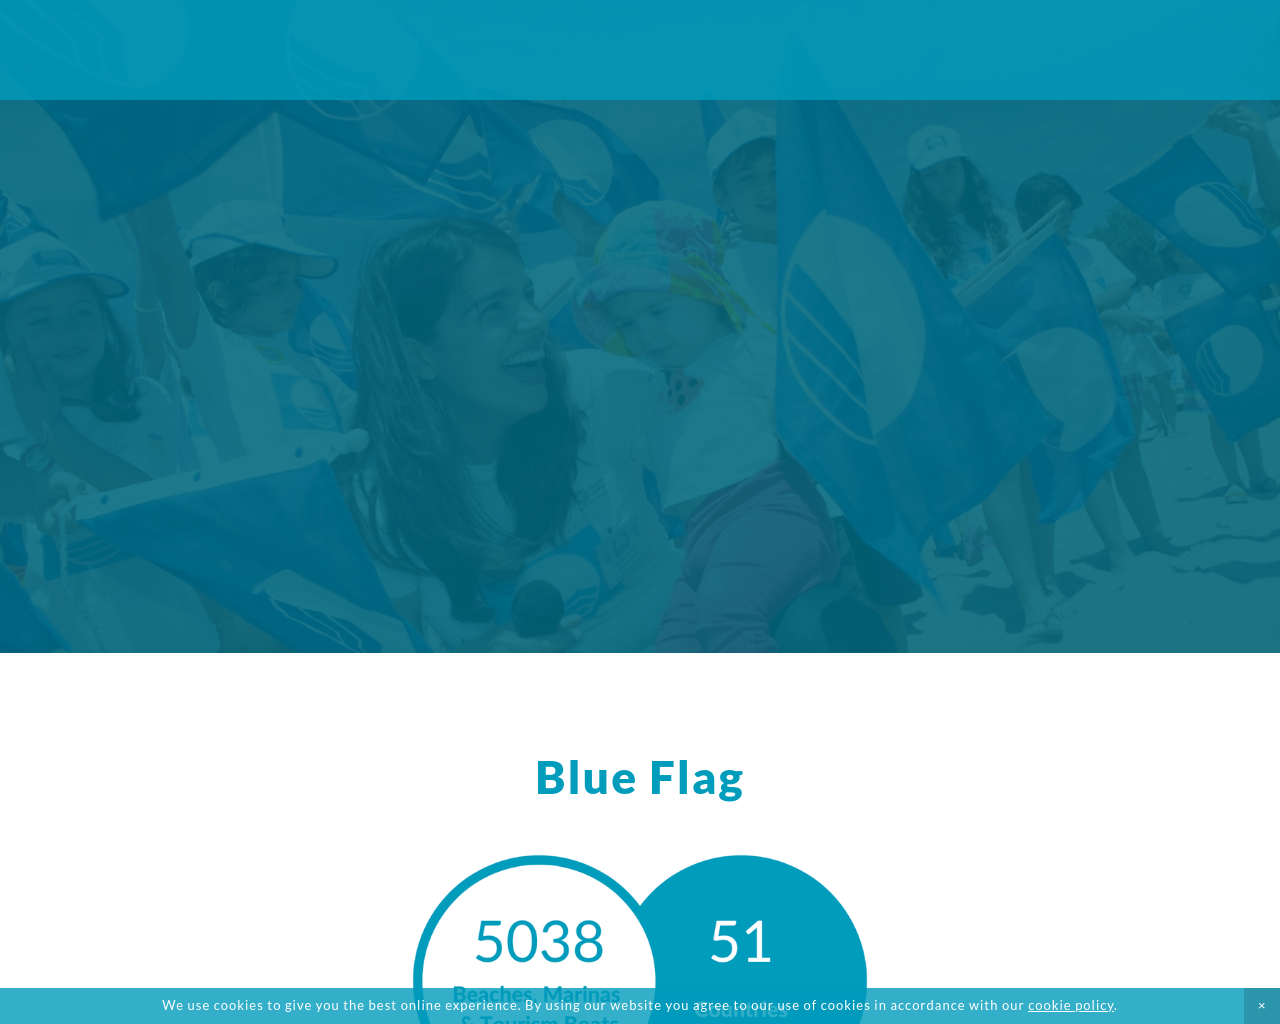 blueflag.org